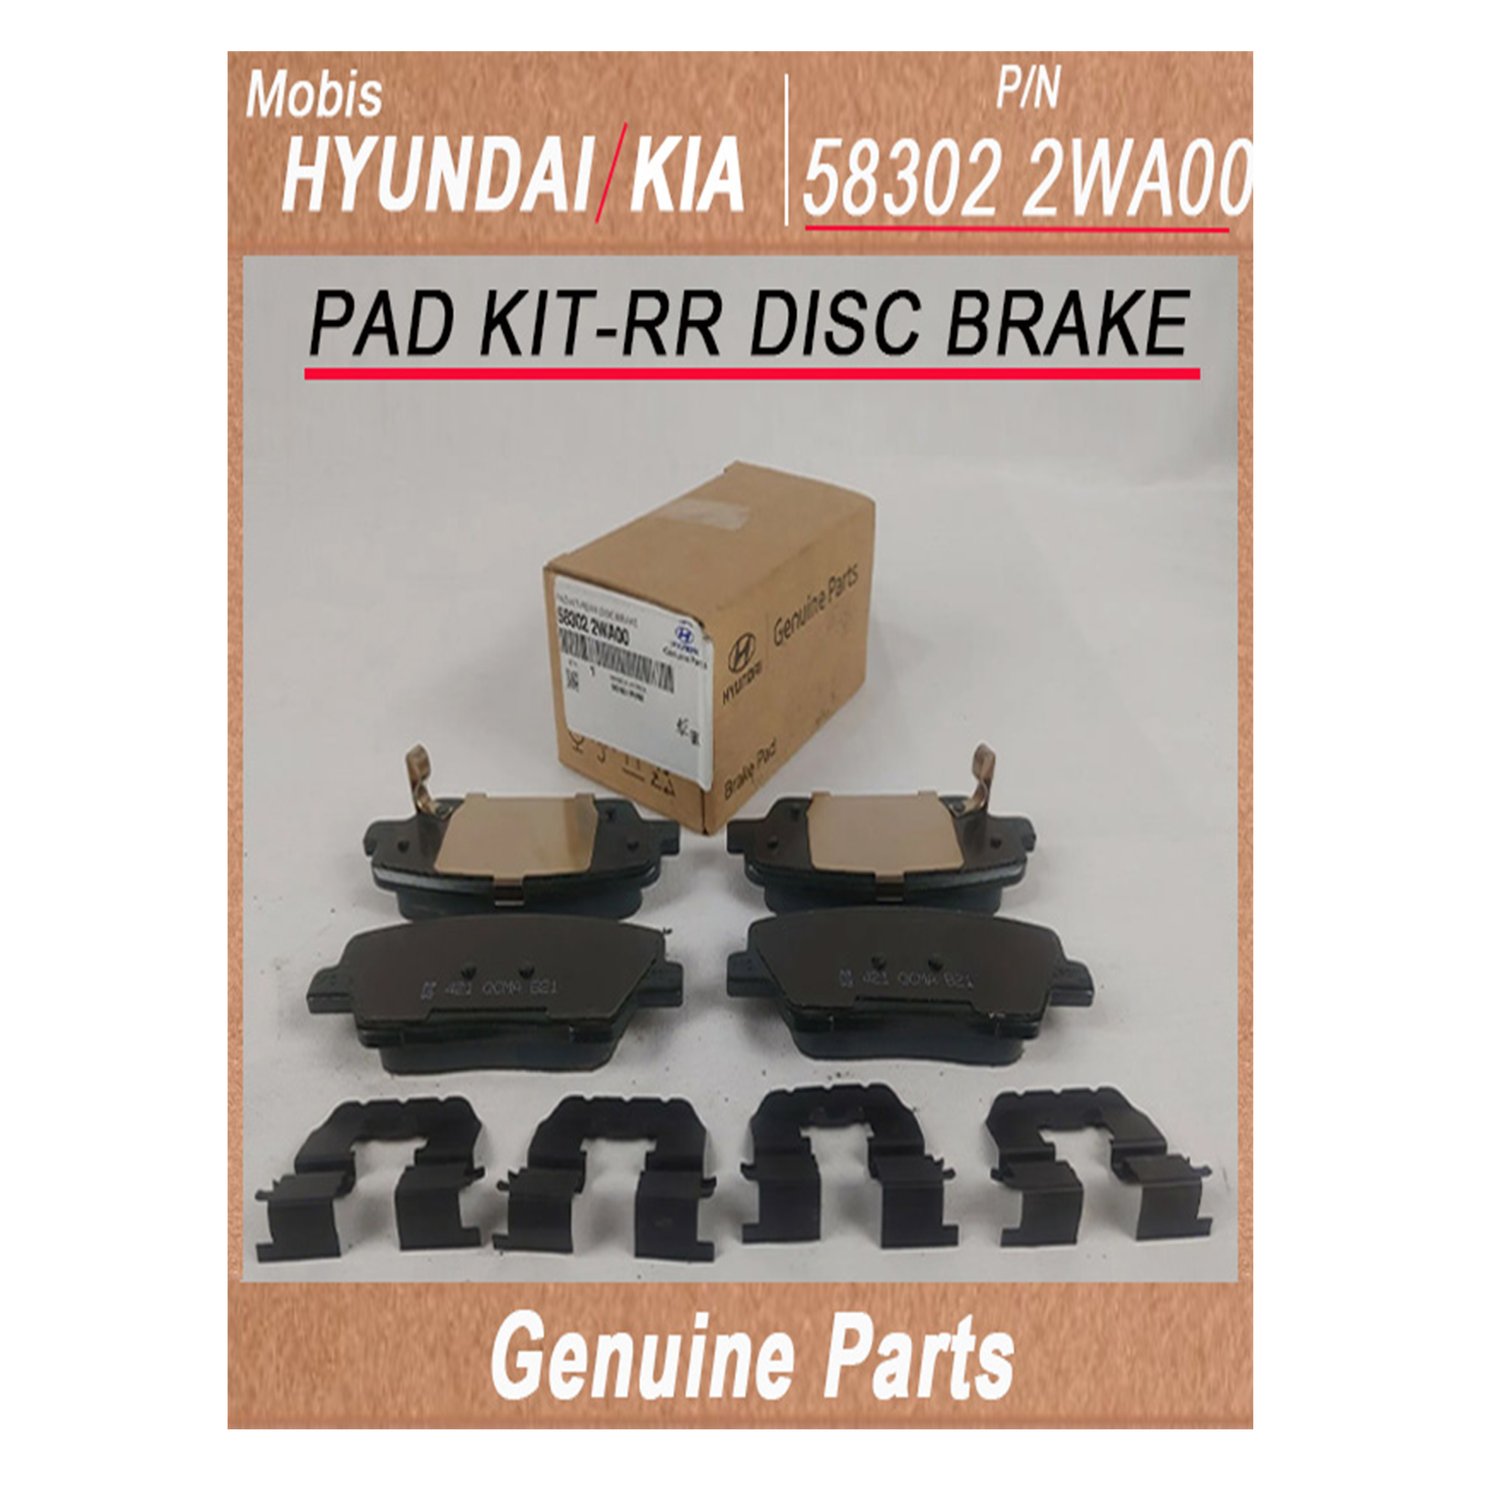 583022WA00 _ PAD KIT_RR DISC BRAKE _ Genuine Korean Automotive Spare Parts _ Hyundai Kia _Mobis_